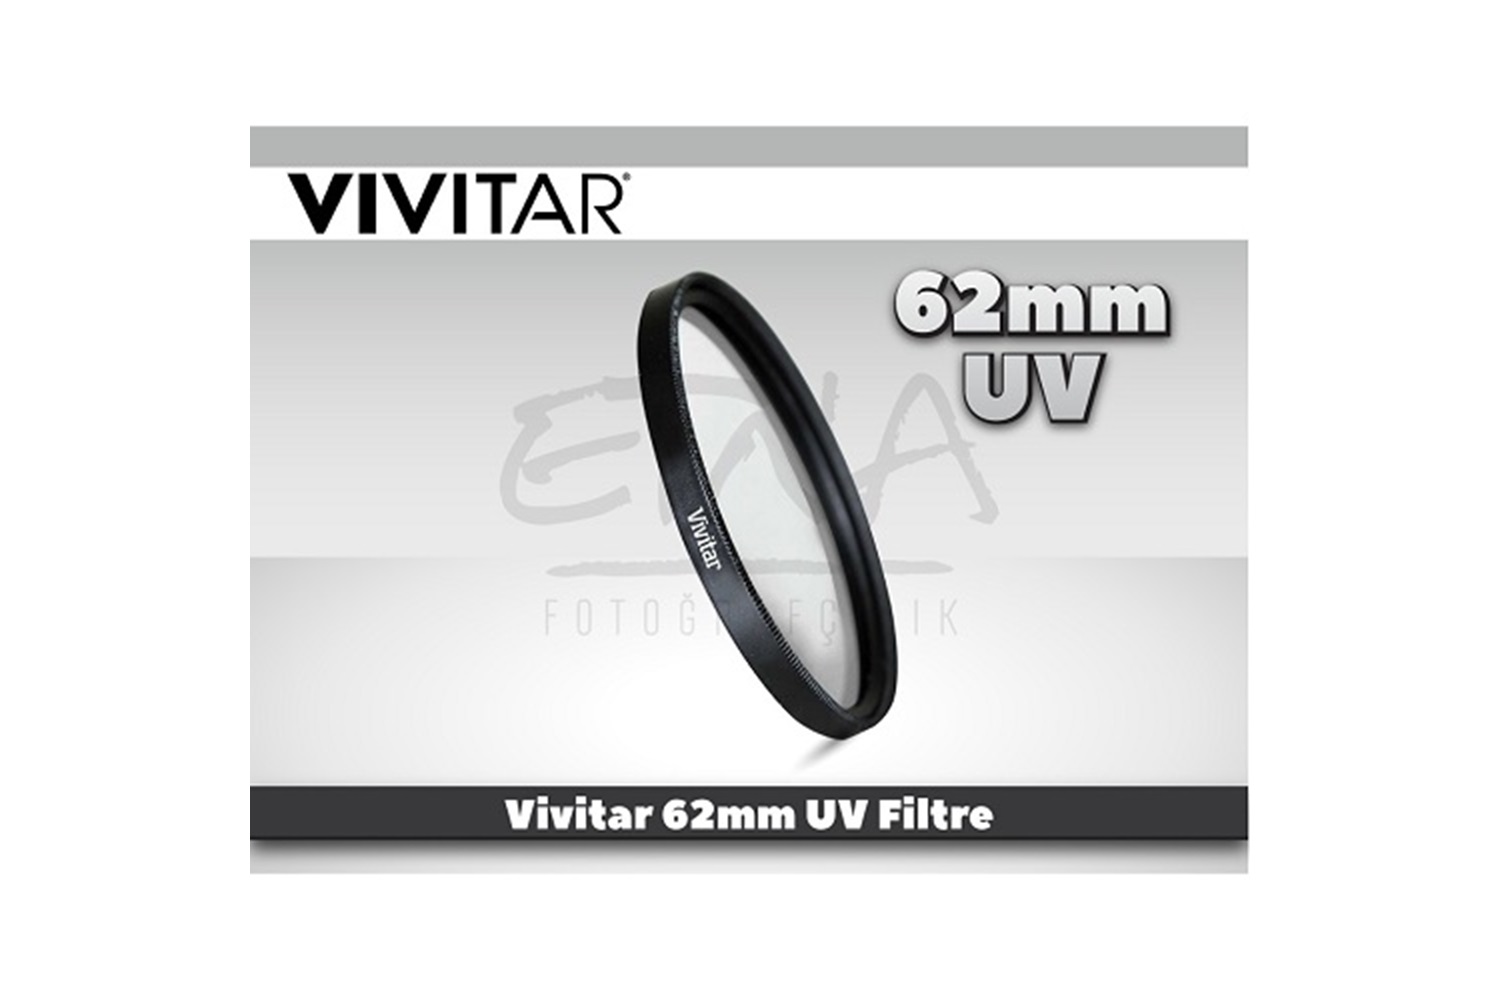 Vivitar 62mm UV Filtre